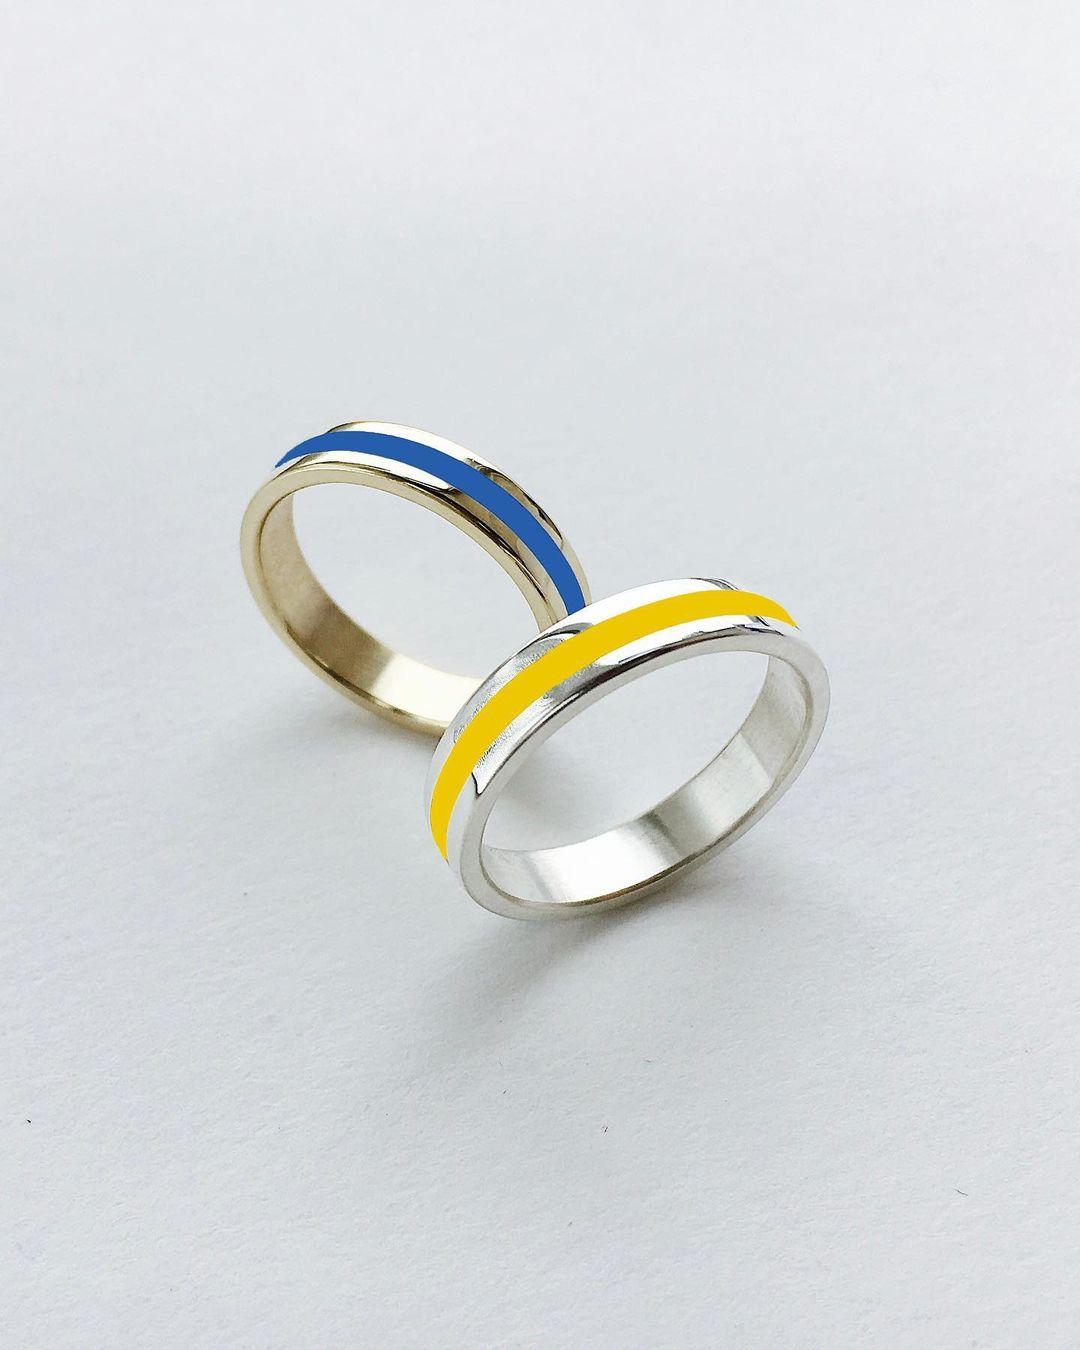 Синее и желтое кольцо / Фото - instagram.com